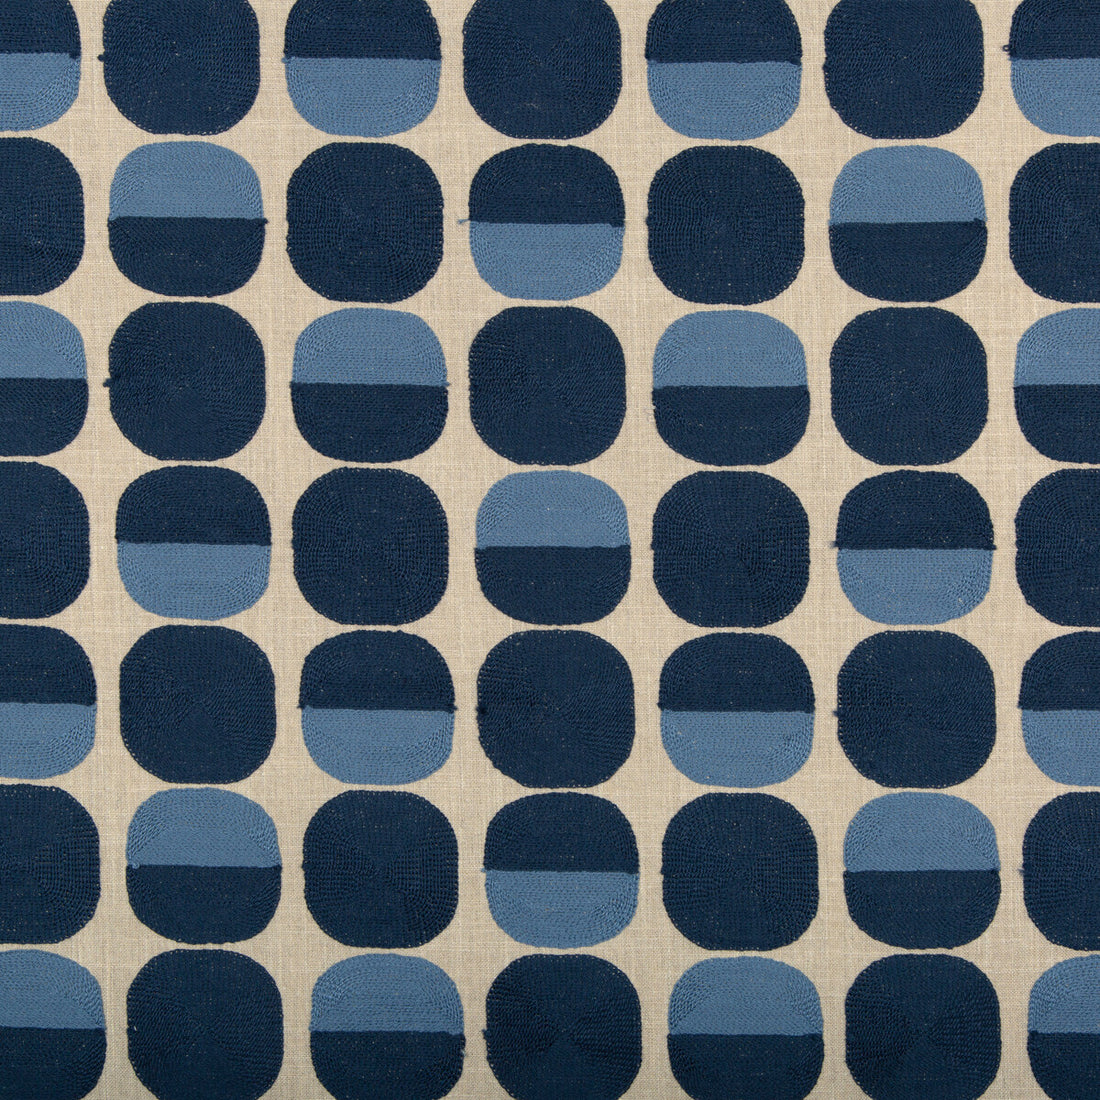 Kravet Basics fabric in 36139-516 color - pattern 36139.516.0 - by Kravet Basics